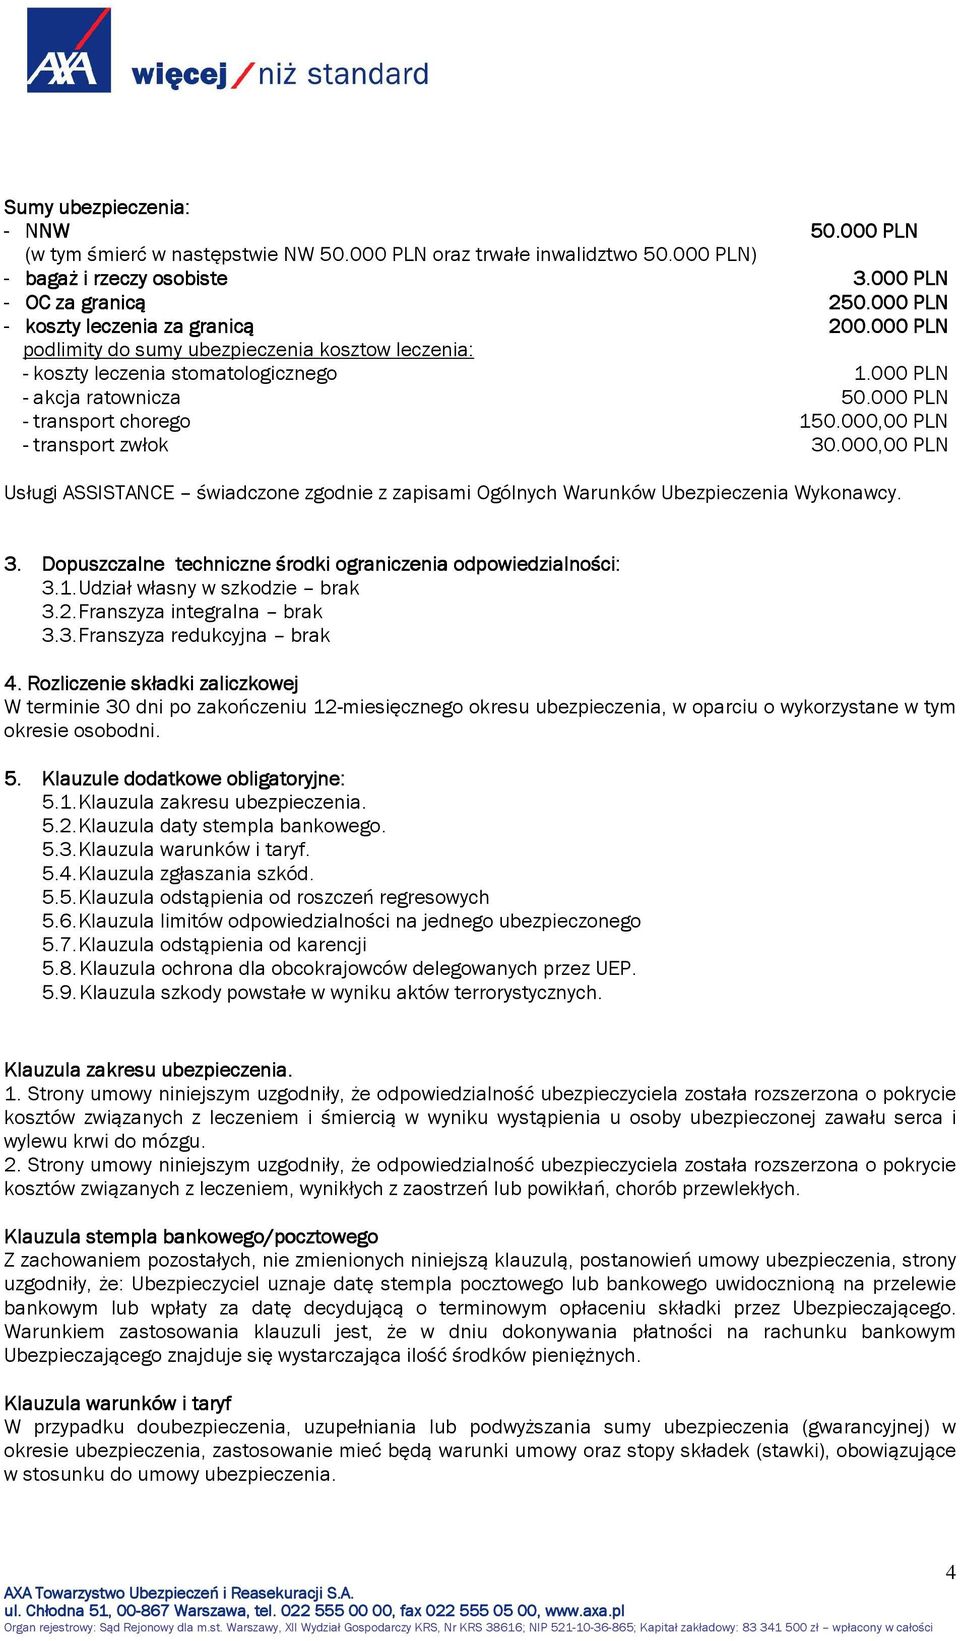 000,00 PLN - transport zwłok 30.000,00 PLN Usługi ASSISTANCE świadczone zgodnie z zapisami Ogólnych Warunków Ubezpieczenia Wykonawcy. 3. Dopuszczalne techniczne środki ograniczenia odpowiedzialności: 3.